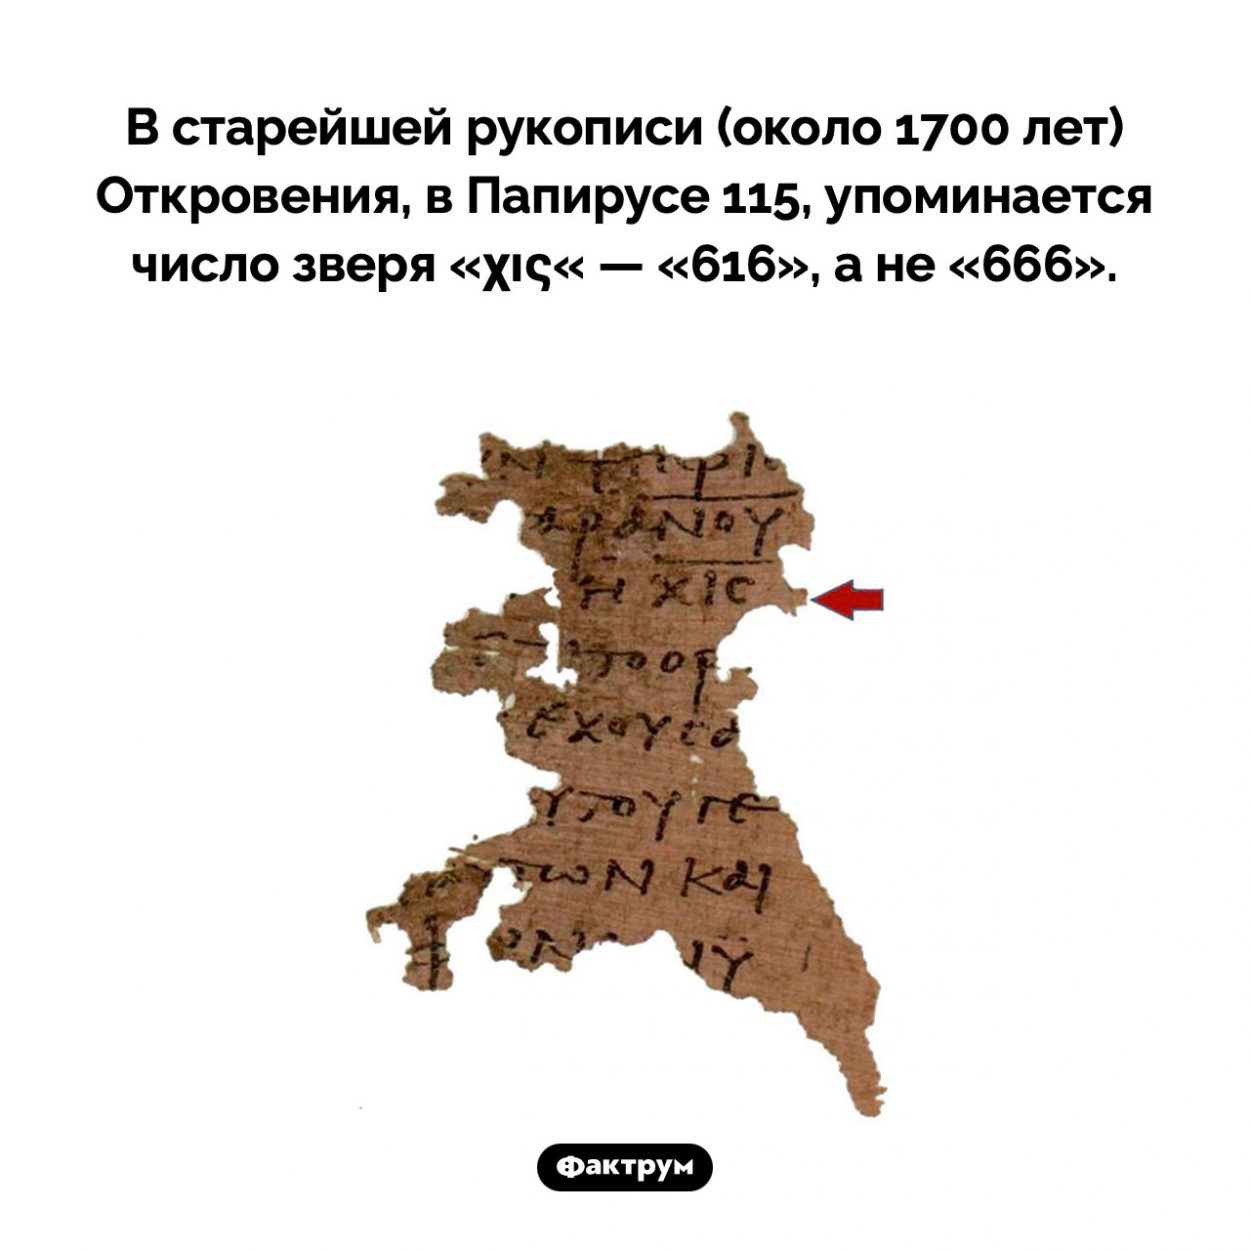 Число зверя в стрейшей рукописи Откровения. В старейшей рукописи (около 1700 лет) Откровения, в Папирусе 115, упоминается число зверя «χις« — «616», а не «666».